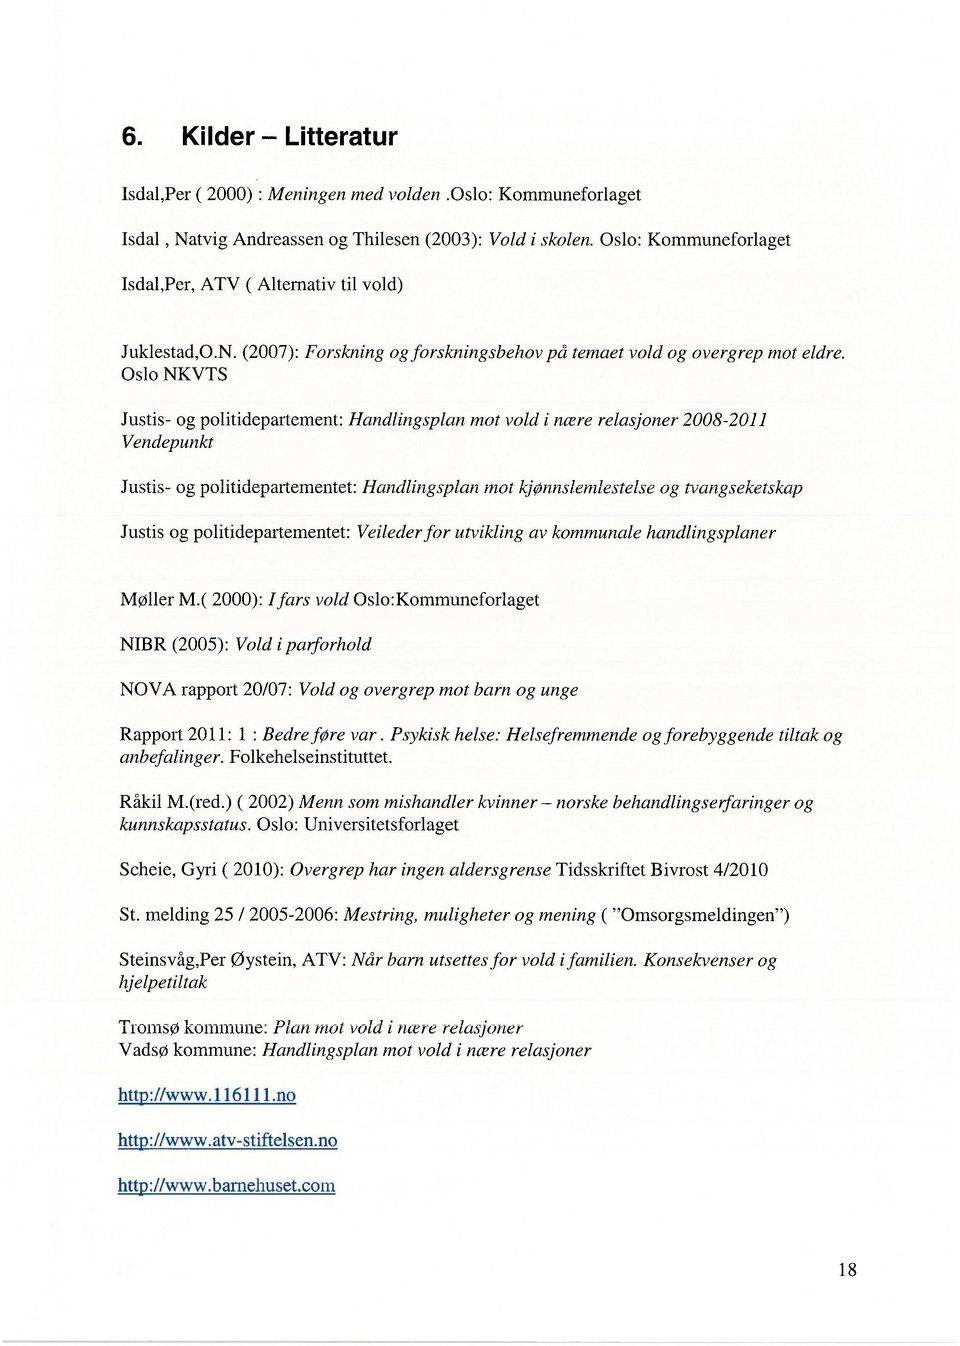 Oslo NKVTS Justis- og politidepartement: Handlingsplan mot vold i nære relasjoner 2008-2011 Vendepunkt Justis- og politidepartementet: Handlingsplan mot kjønnsiemiesteise og ivangseketskap Justis og